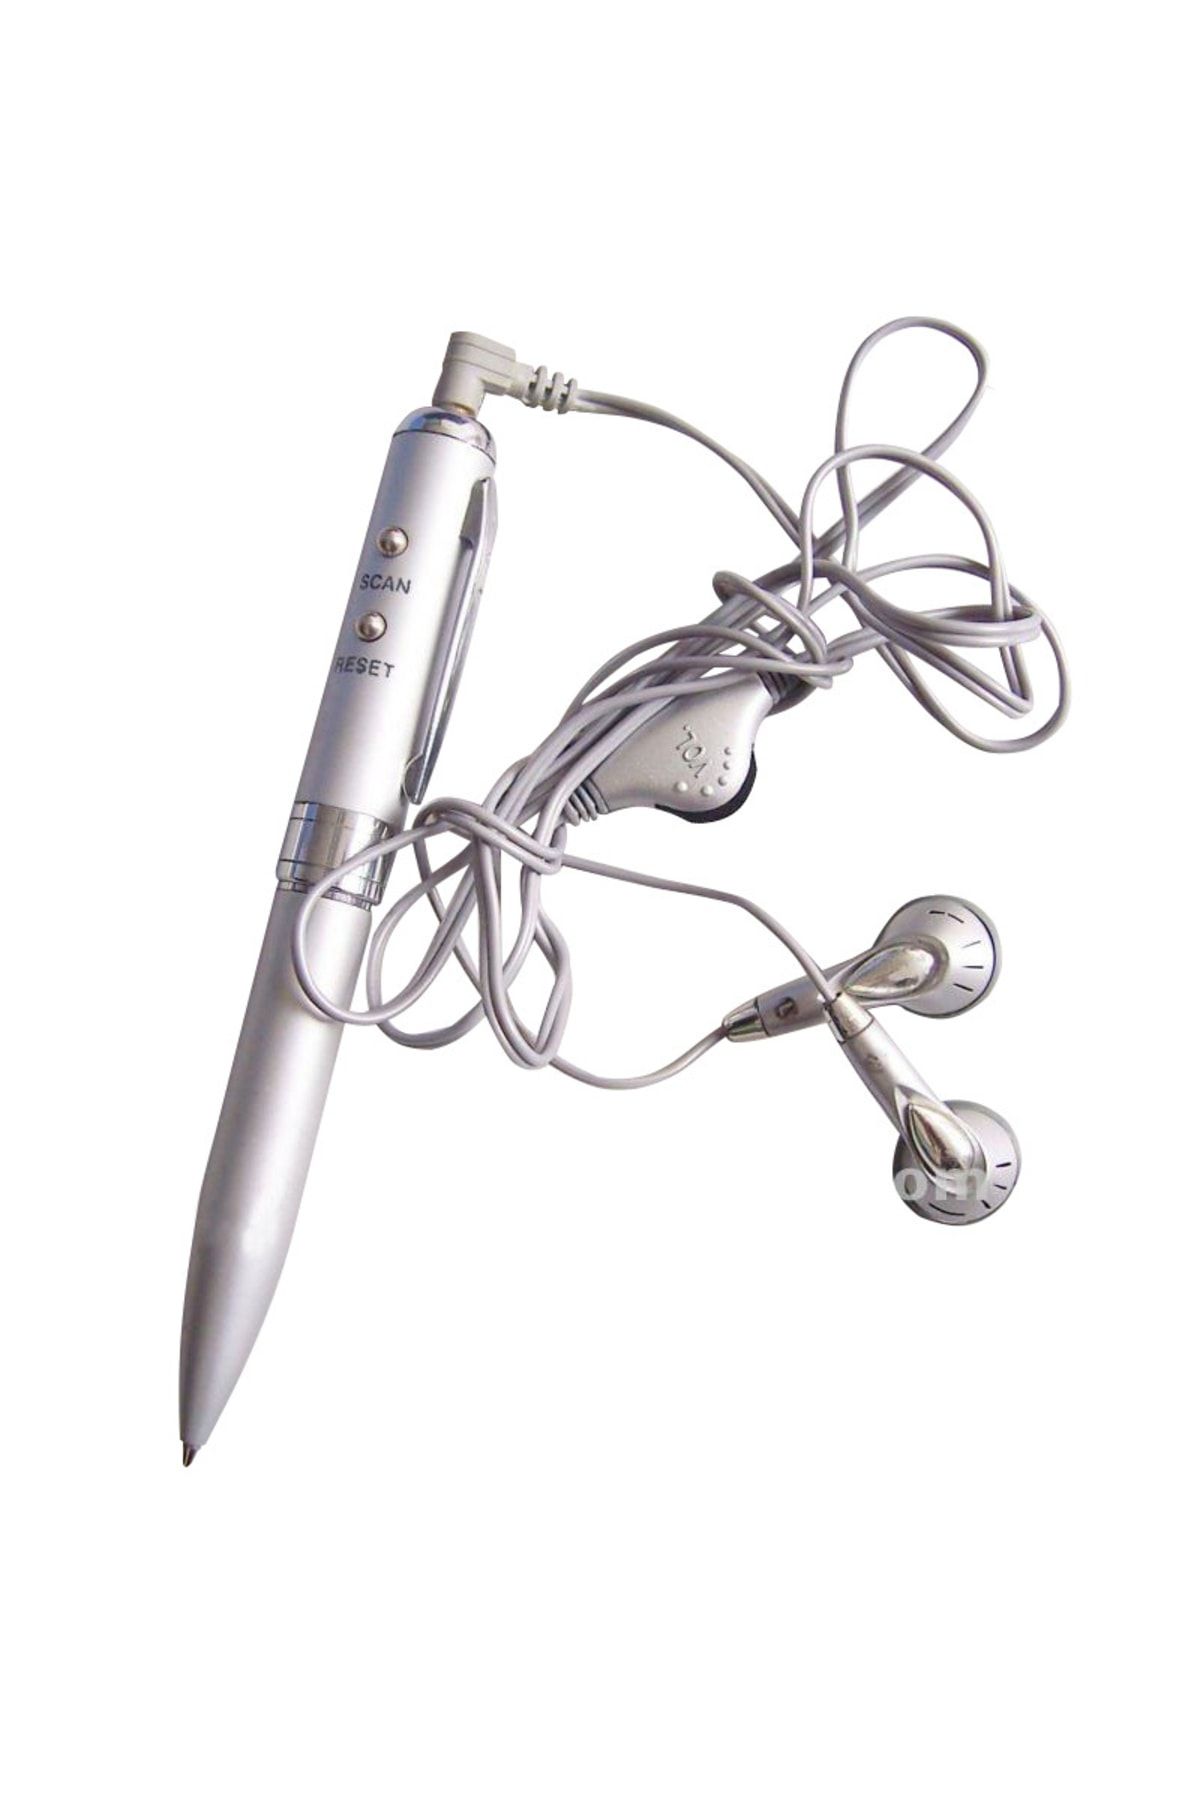 RICHIE Fm Radyolu Kalem Metal Kalem Hediyelik Kalem Ahşap Kutulu Doğum Günü Hediyesi